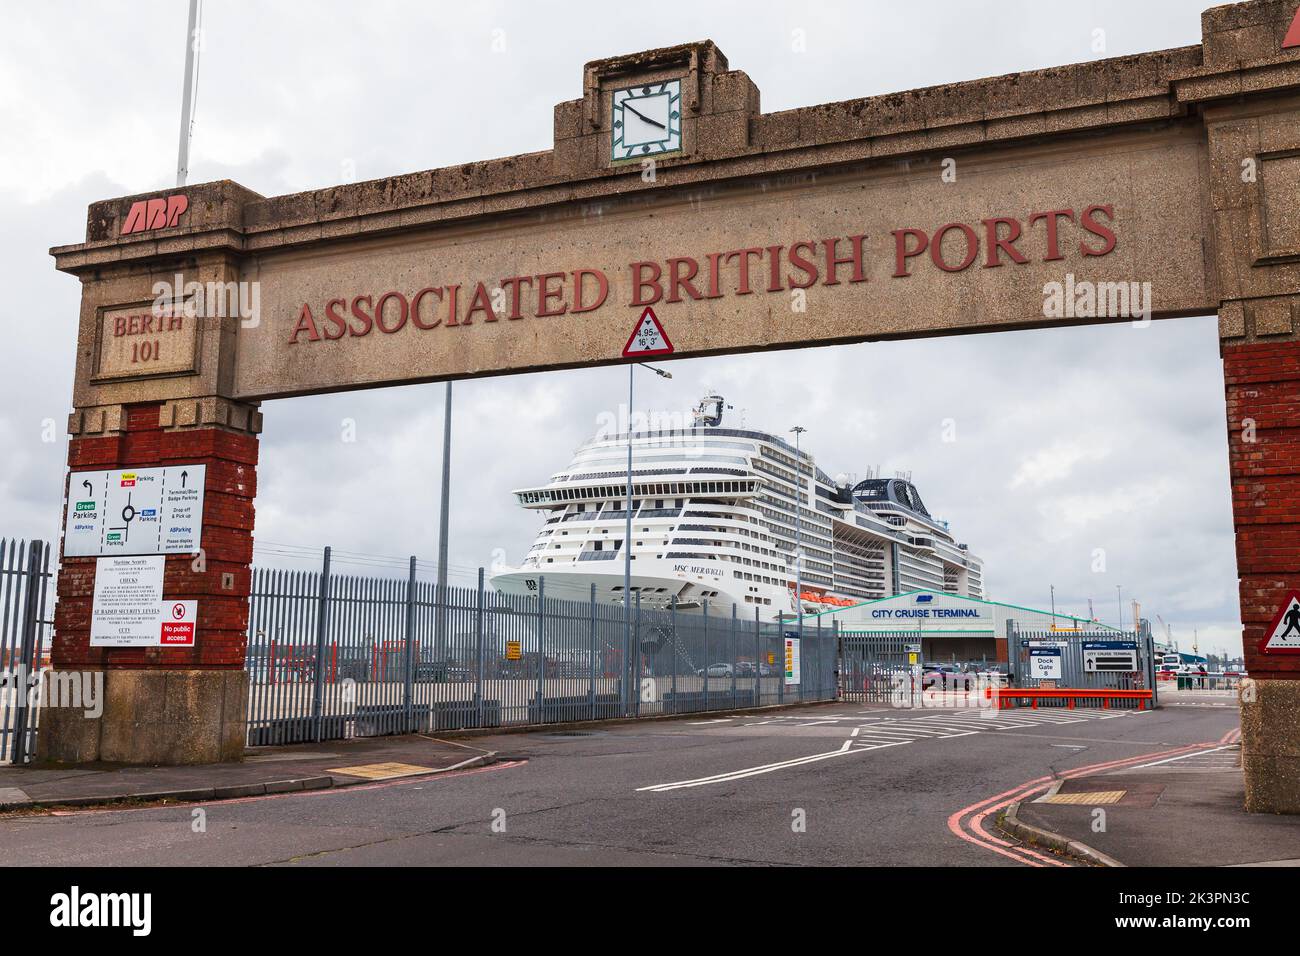 Southampton, Reino Unido - 24 de abril de 2019: Puerta de puertos británicos asociados. El crucero MSC Meraviglia está amarrado en el puerto de Southampton en la berth Foto de stock